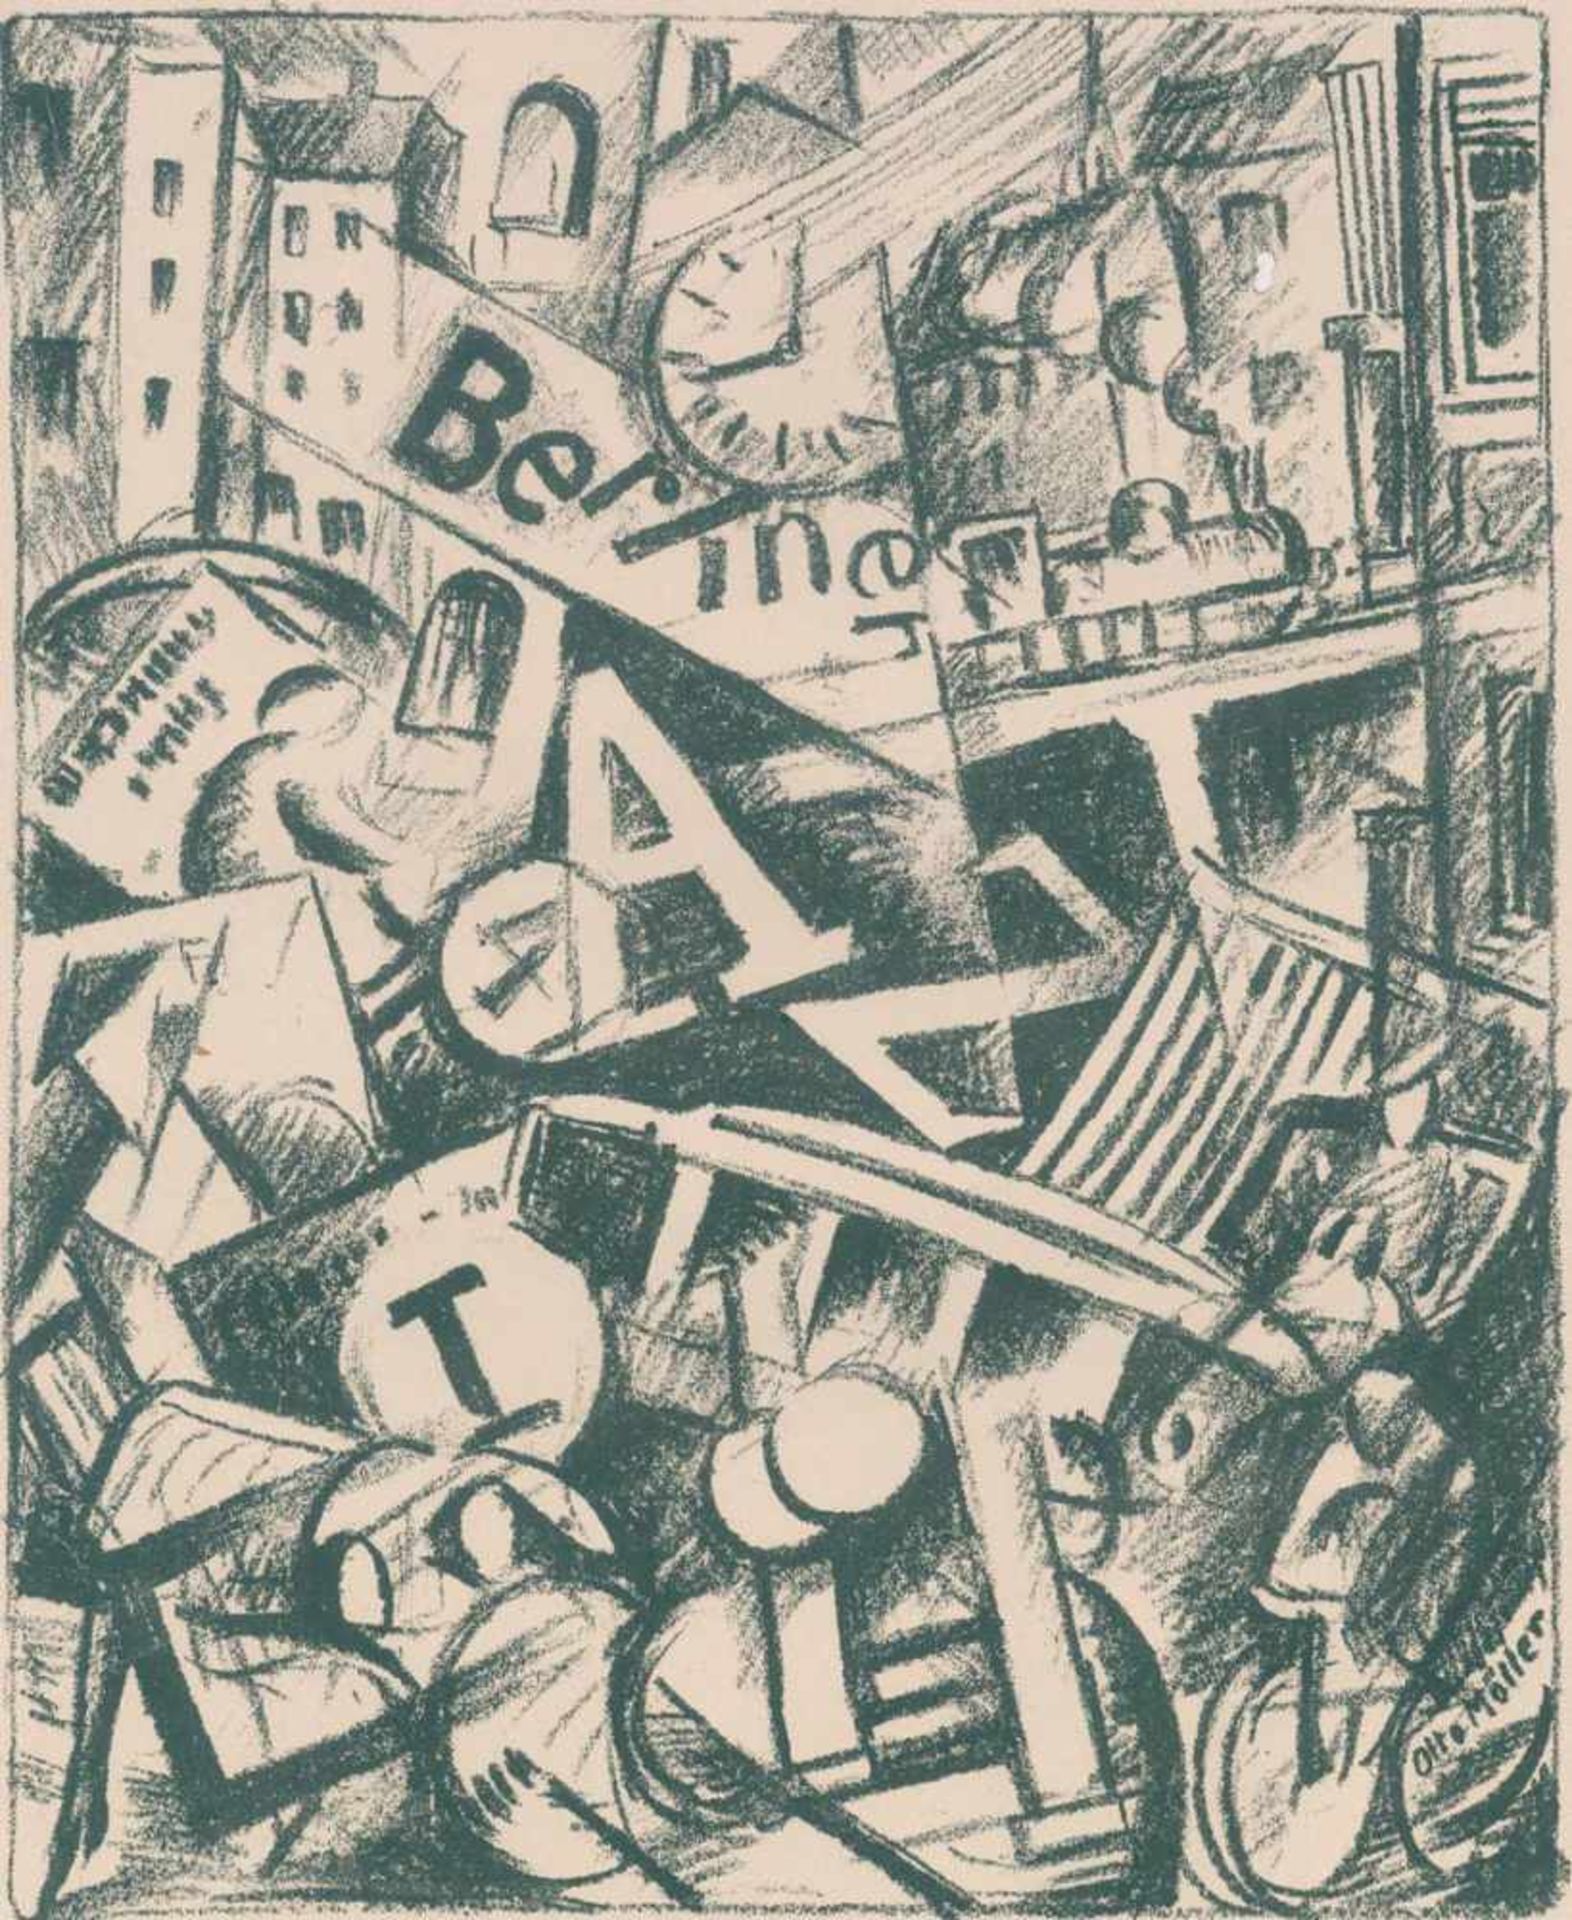 Möller, Otto(1883 Schmidefeld/Thüringen - Berlin 1964). Berliner Jazz. Lithographie, ca. 1920. 25